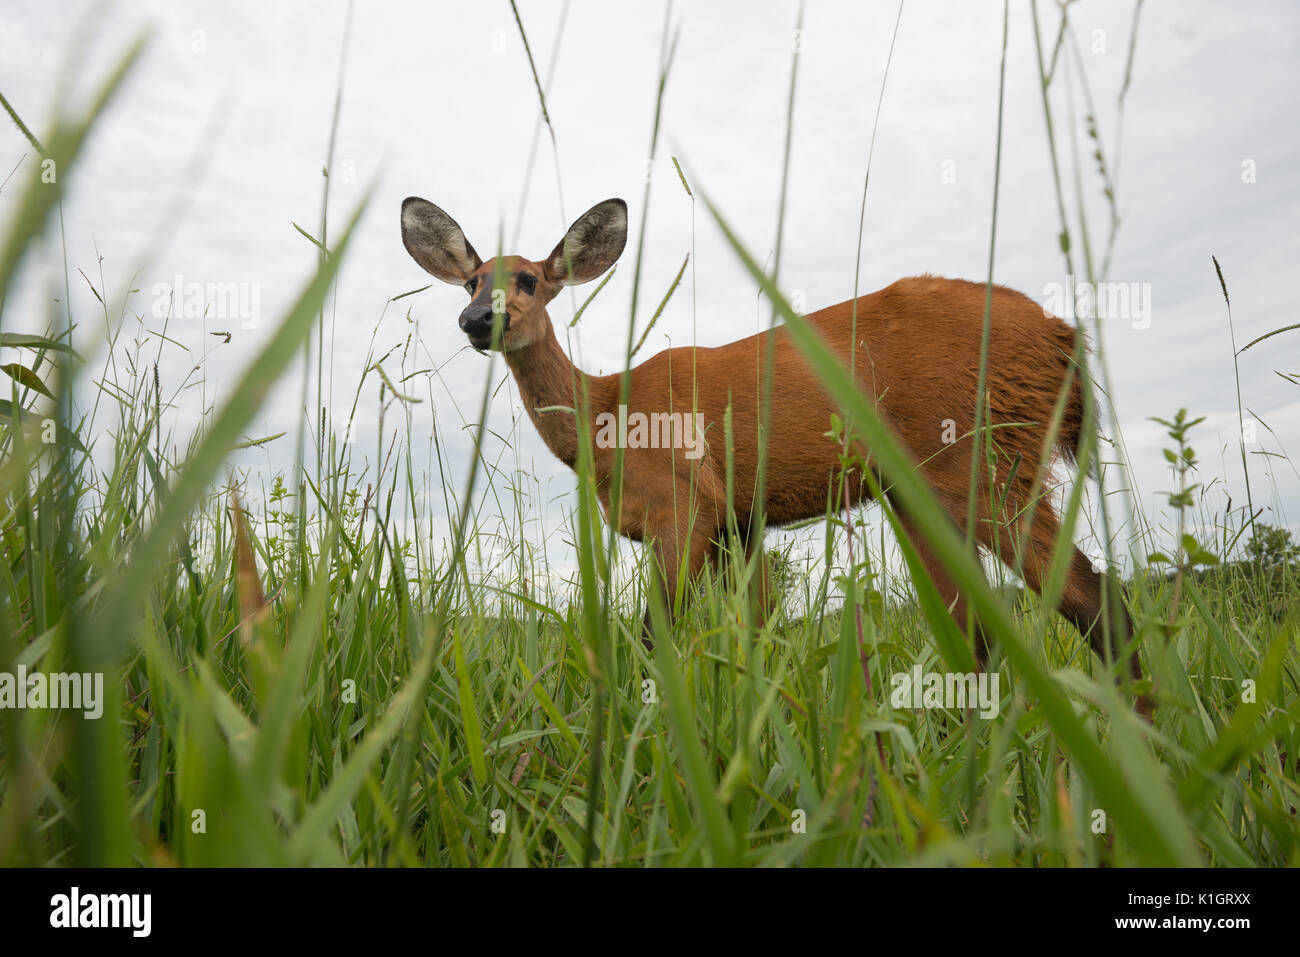 Female Marsh Deer from Central Brazil Stock Photo